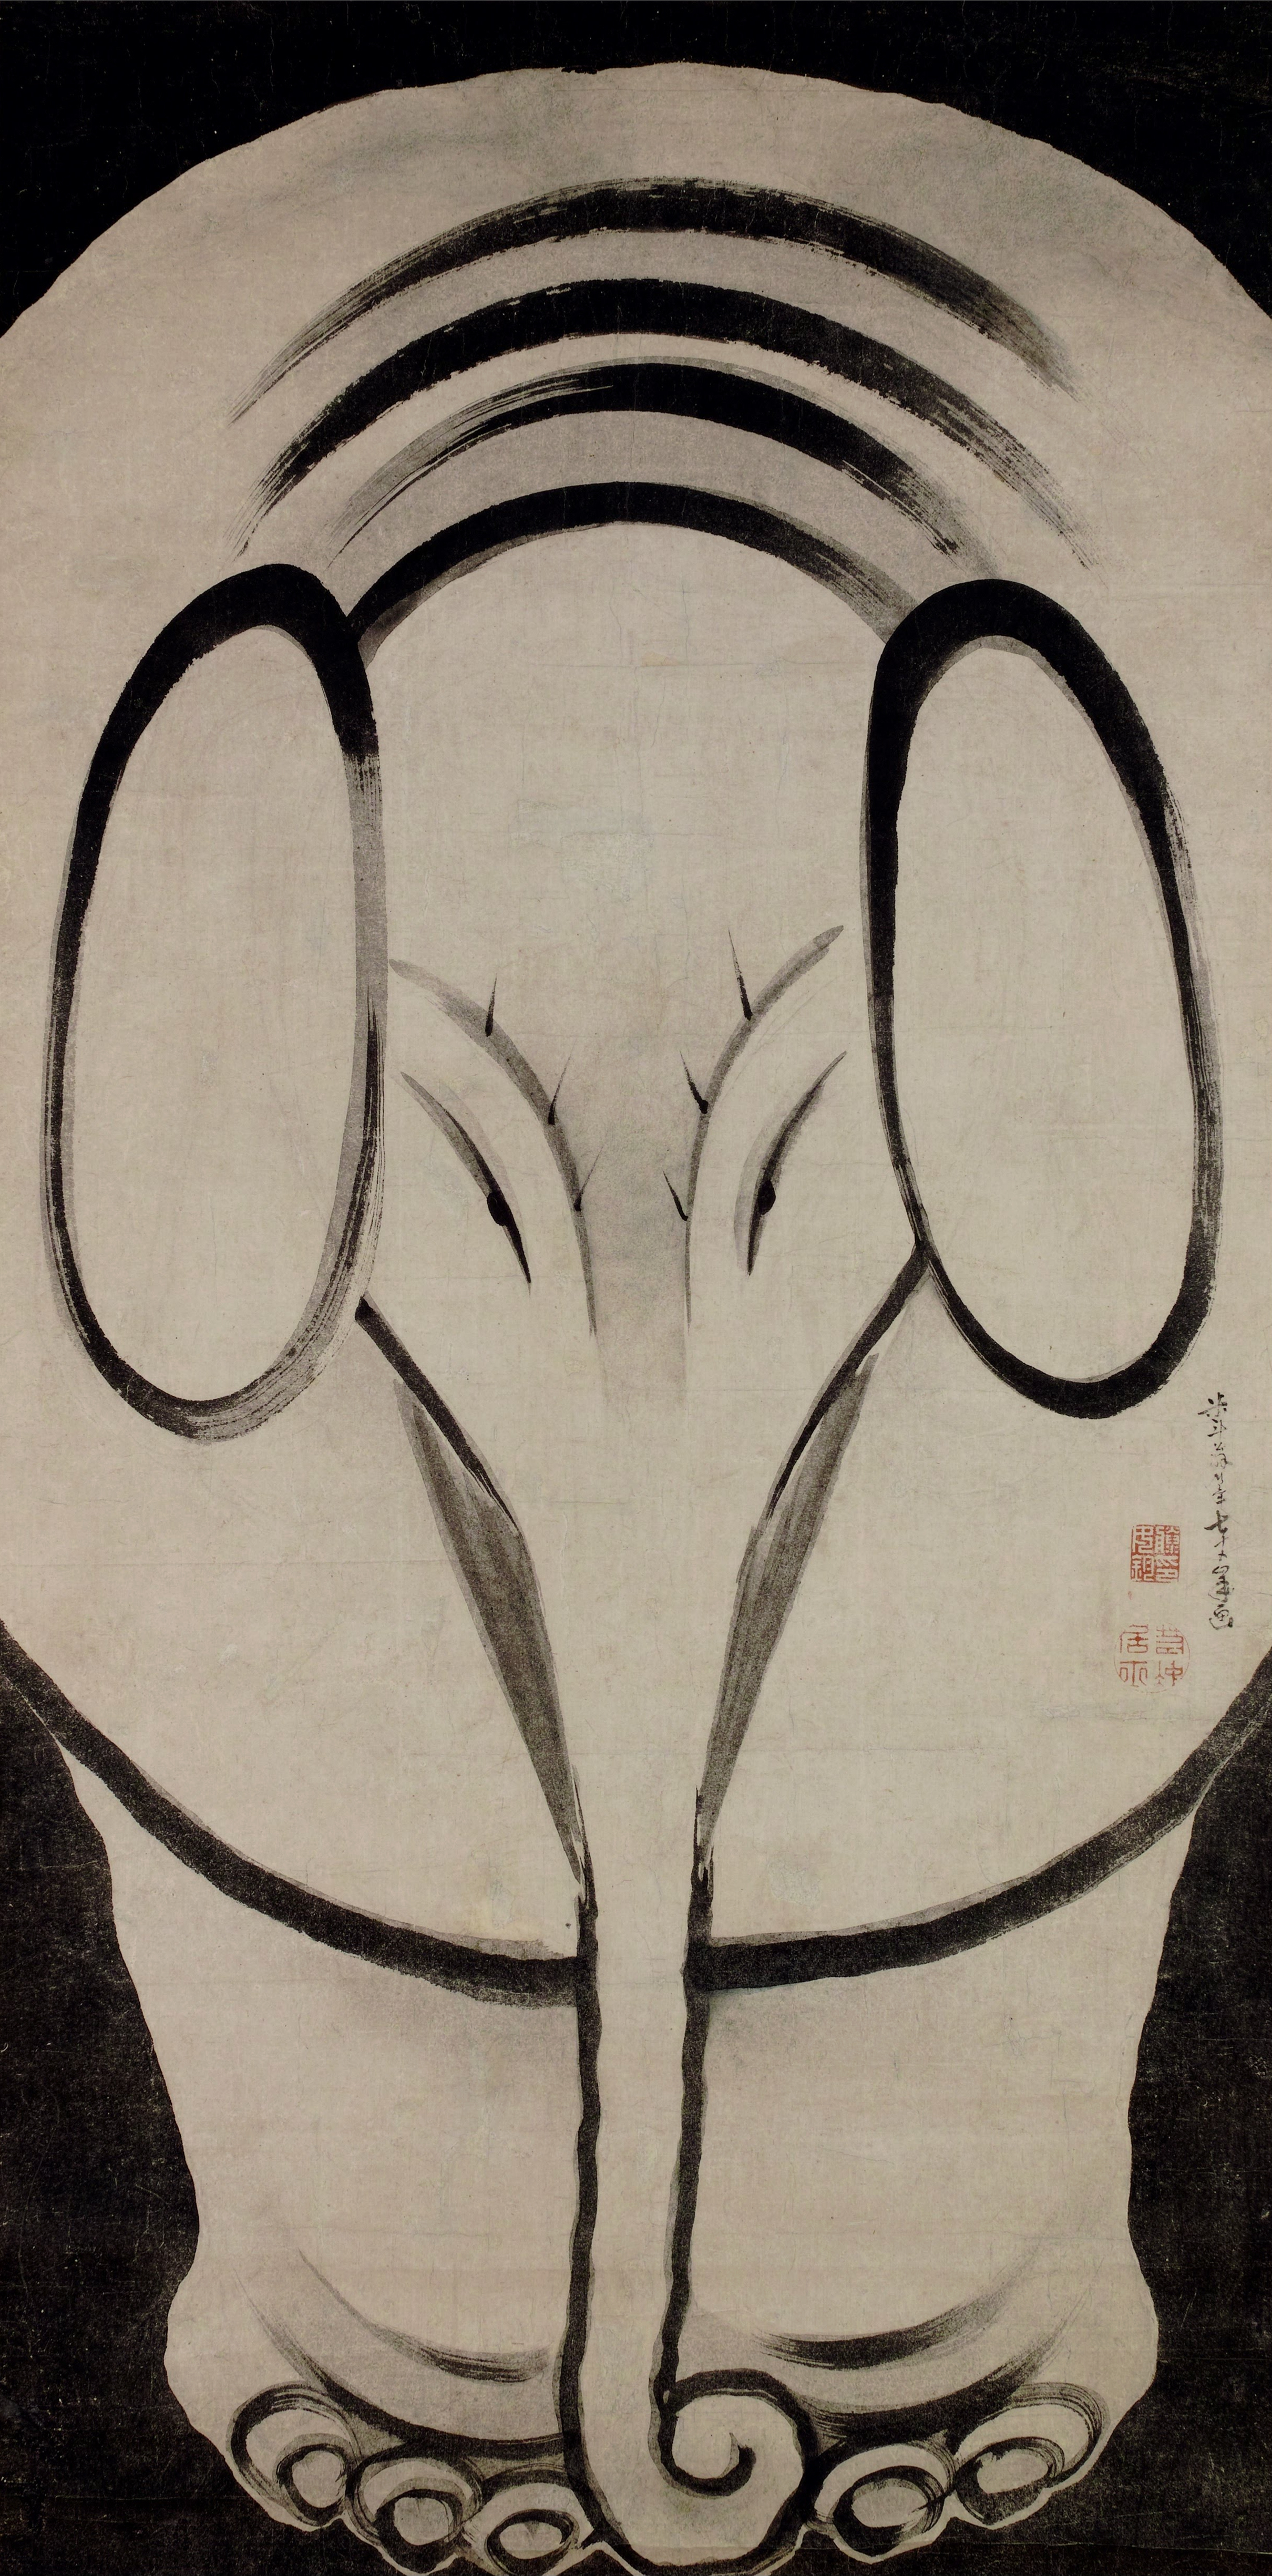 Słoń by Itō Jakuchū - 1790 - 155,5cm × 77,3cm 